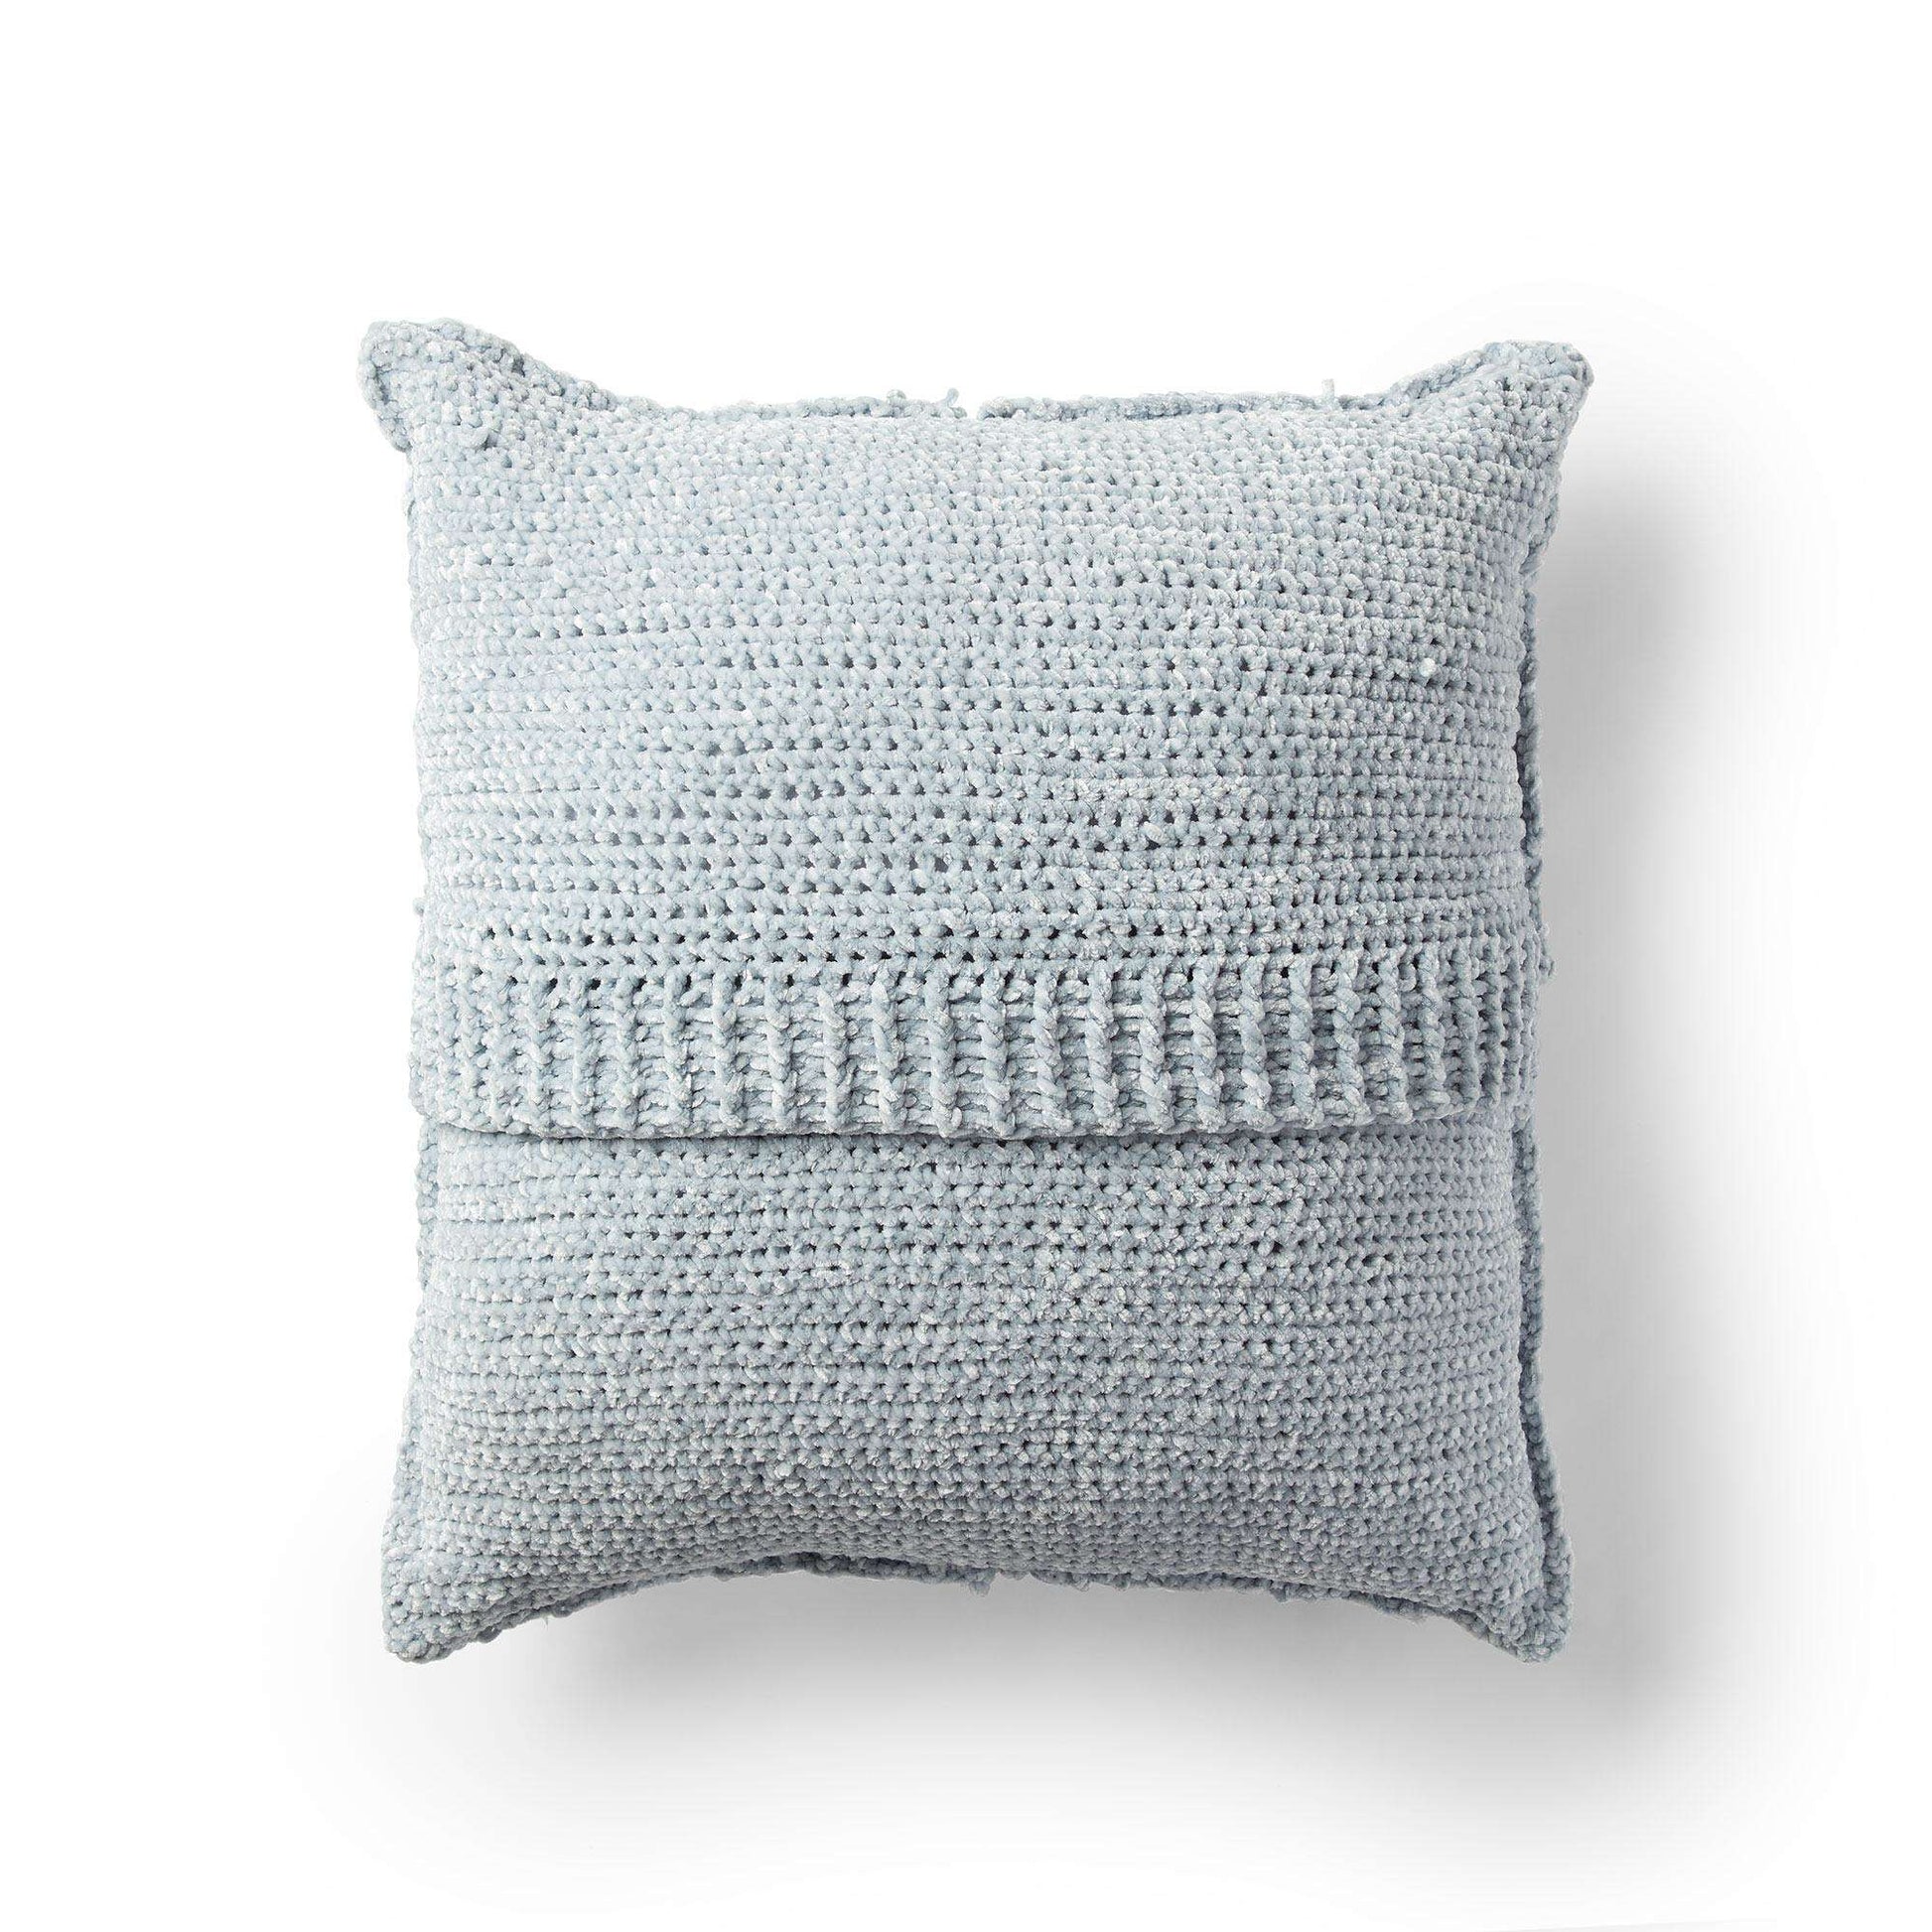 Free Bernat Swirling Textures Crochet Pillow Pattern